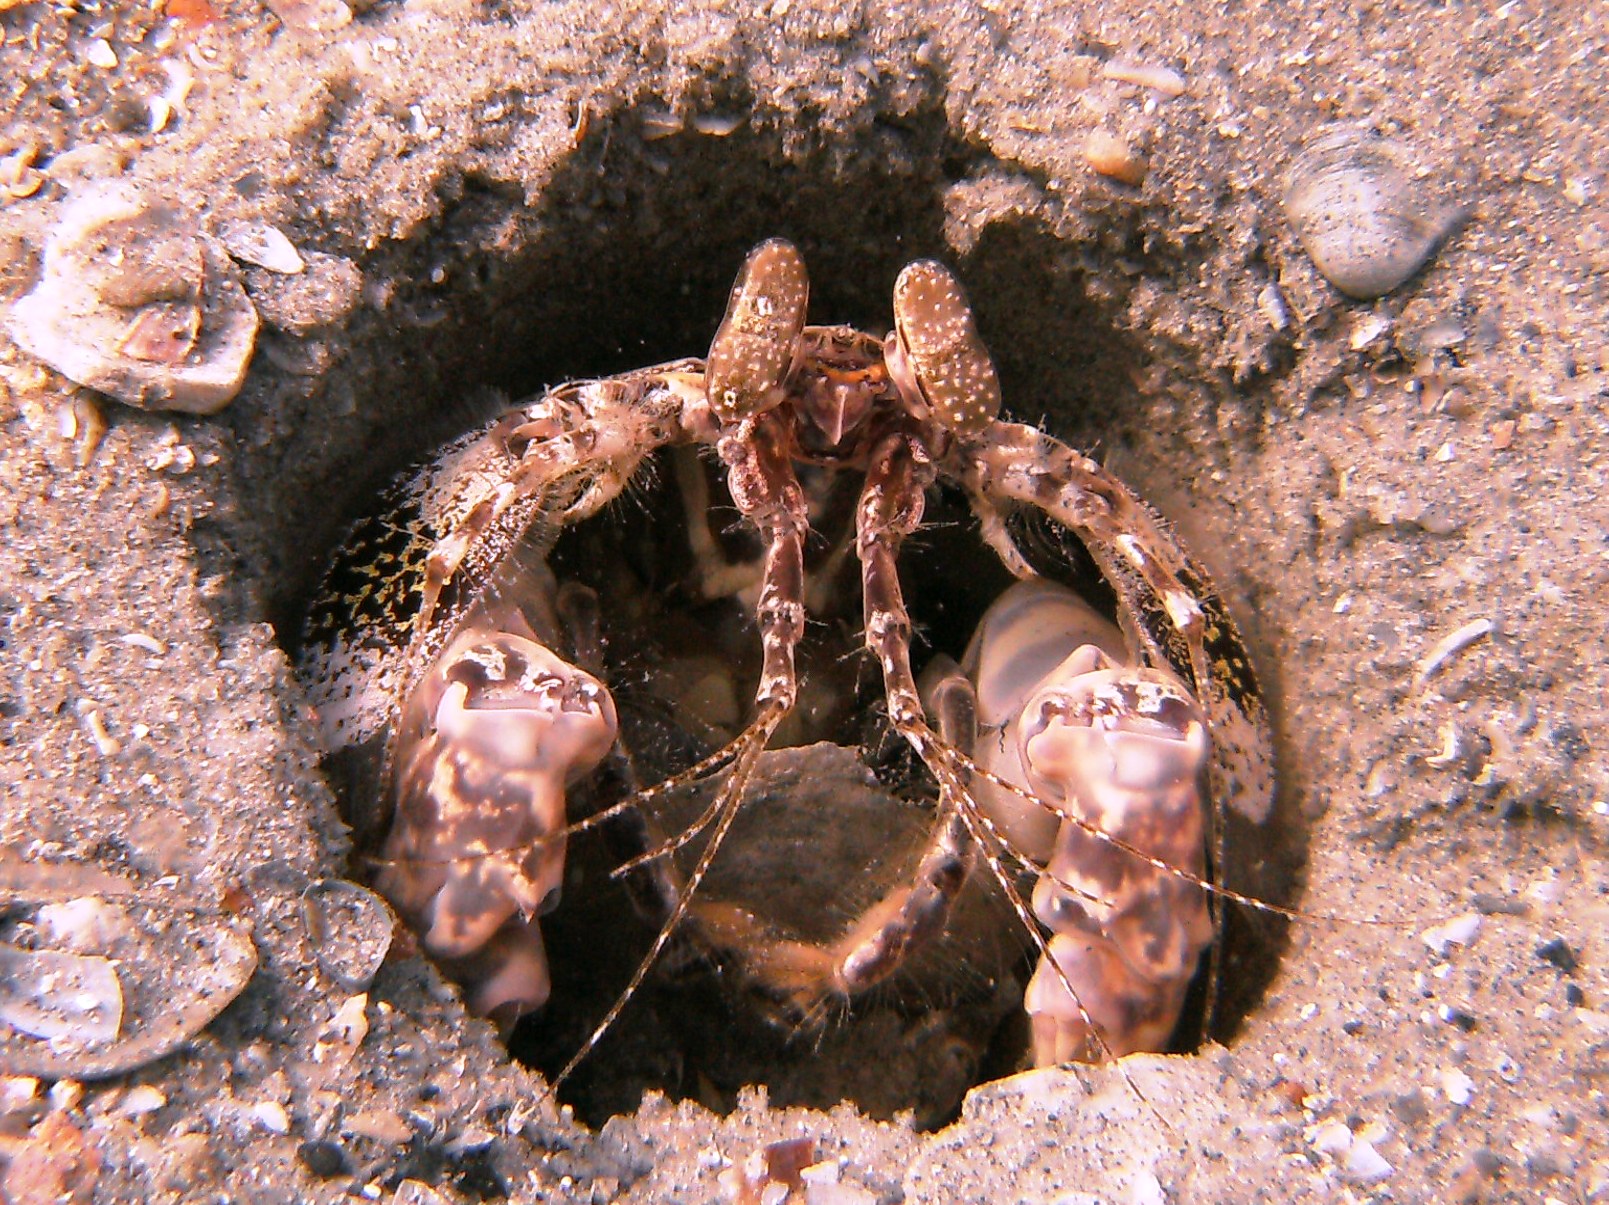 mantis shrimp at bhb